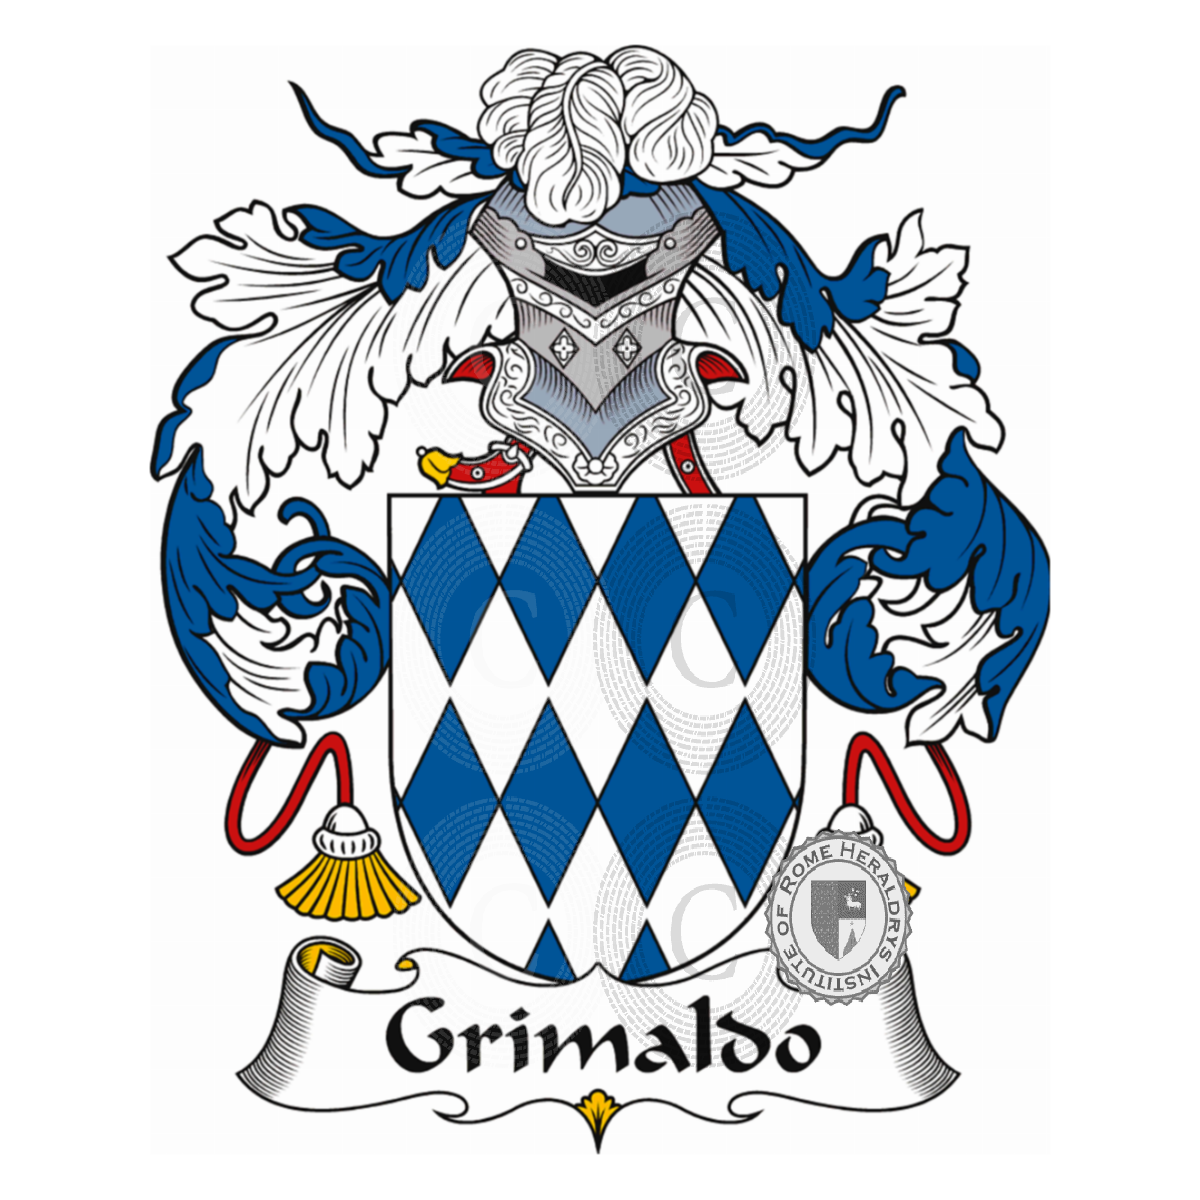 Stemma della famigliaGrimaldo, Grimaldi